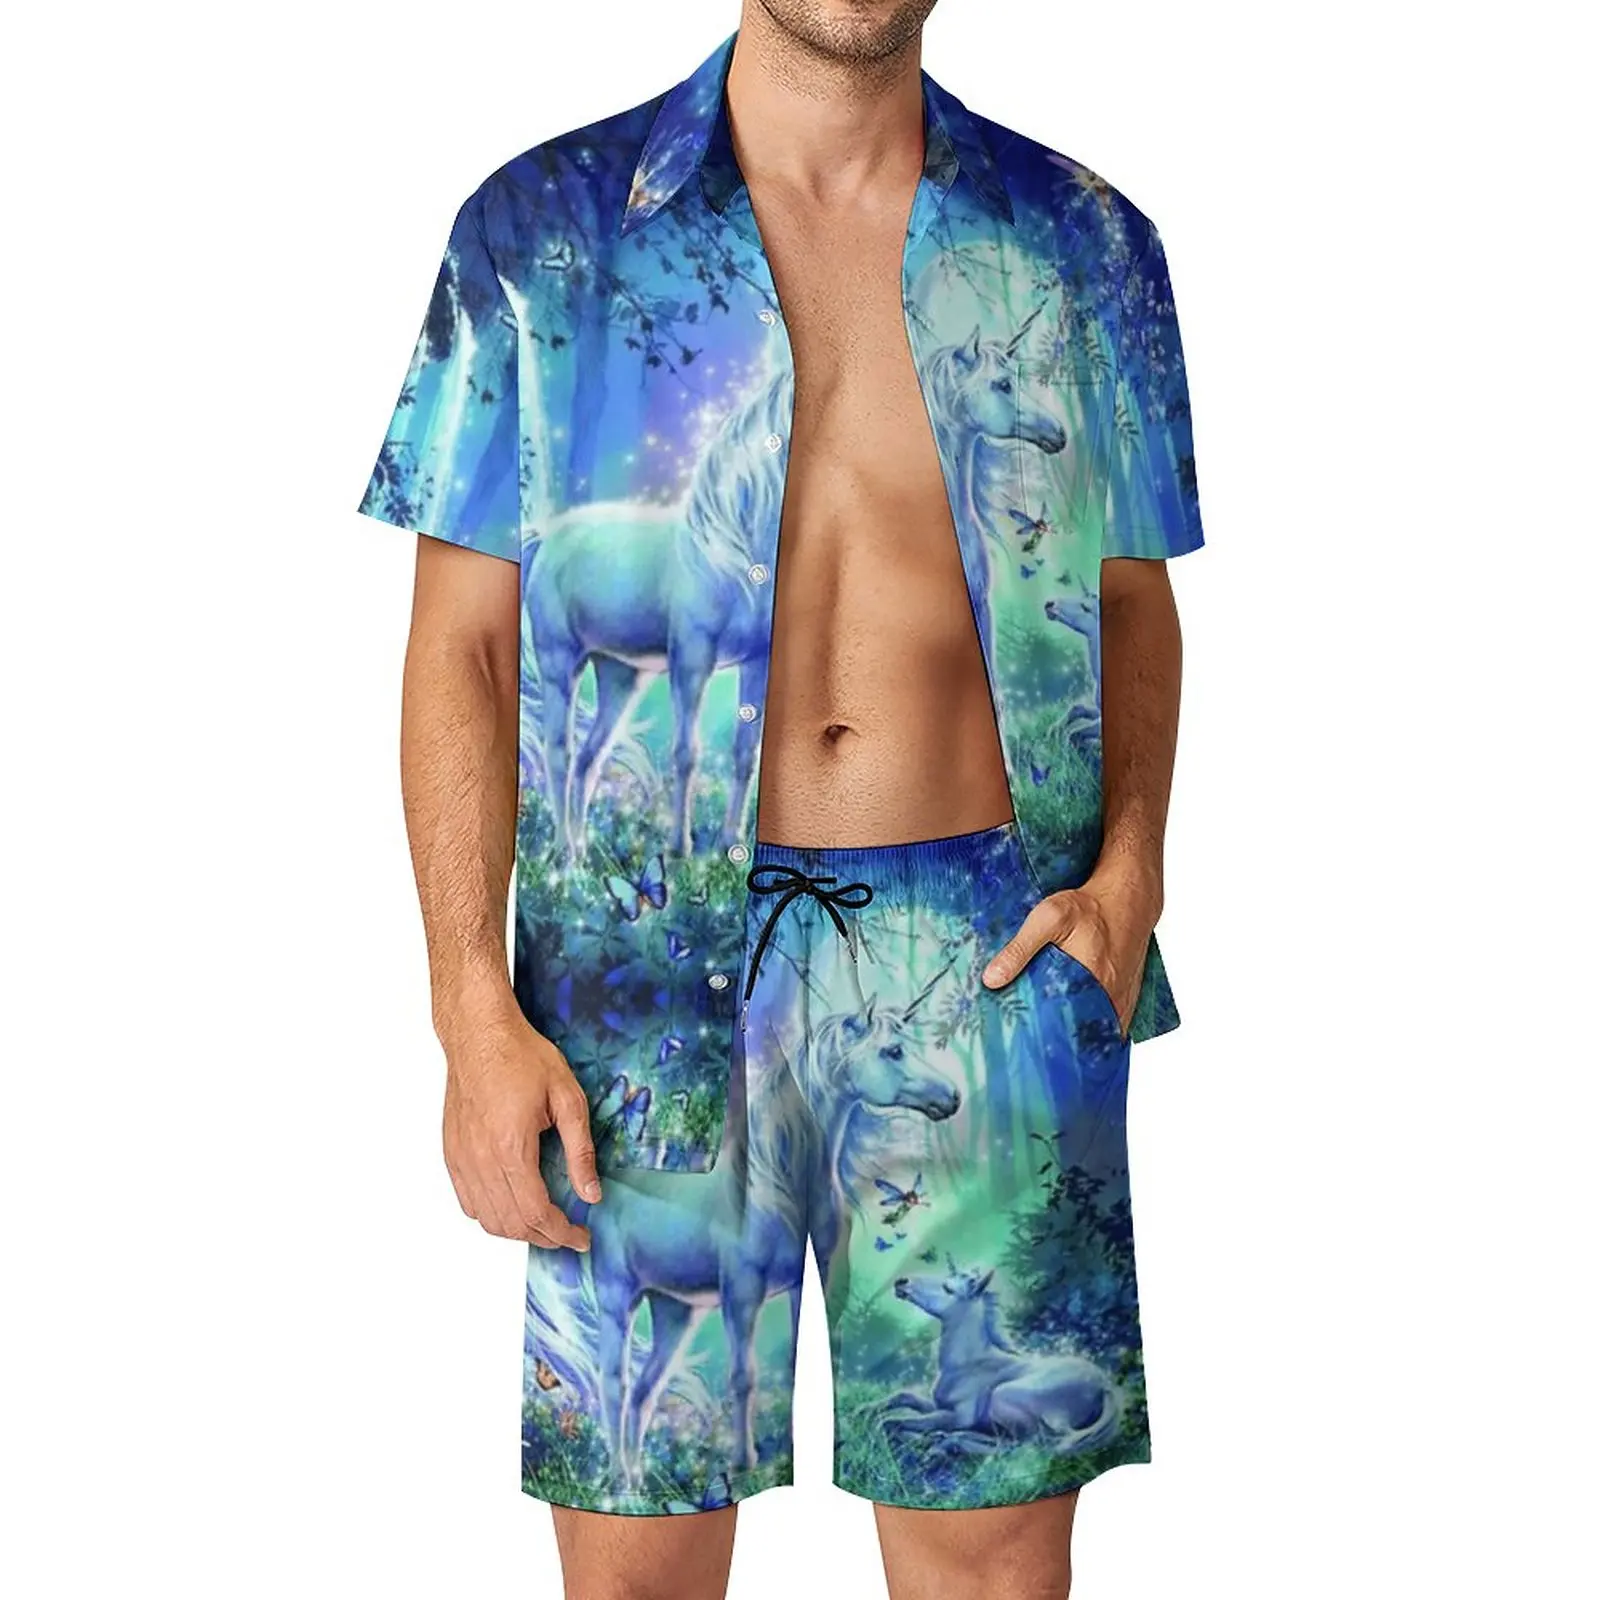 

Мужской пляжный костюм с единорогом, волшебный Сказочный пейзаж, 2 предмета, брючный костюм, винтажный пляжный комплект высшего качества, европейские размеры